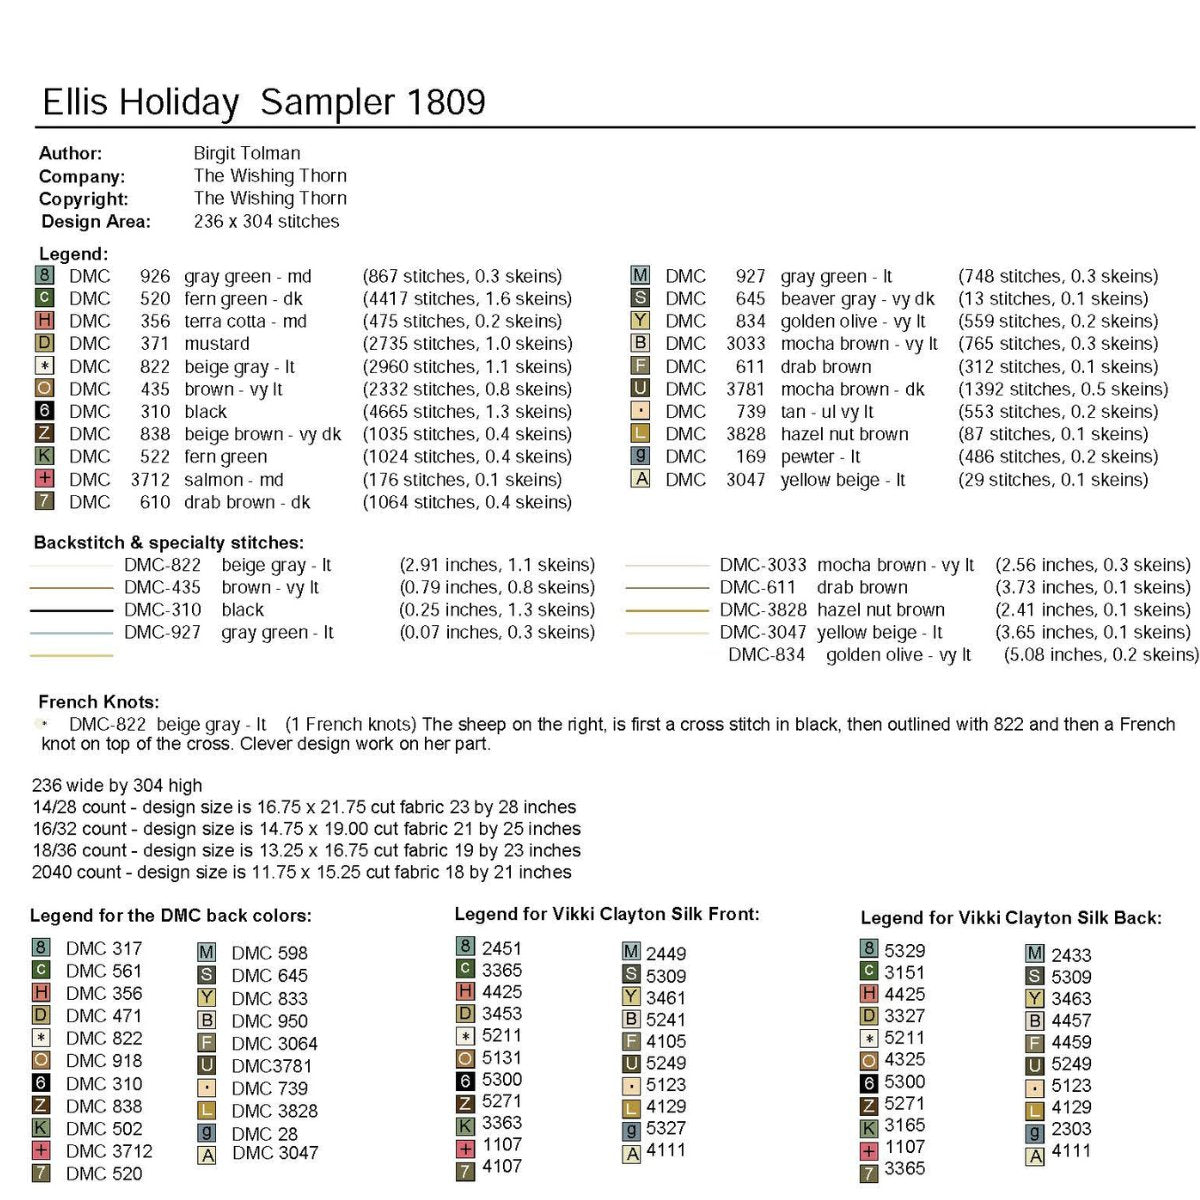 Ellis Holiday 1809 Sampler Paper Chart